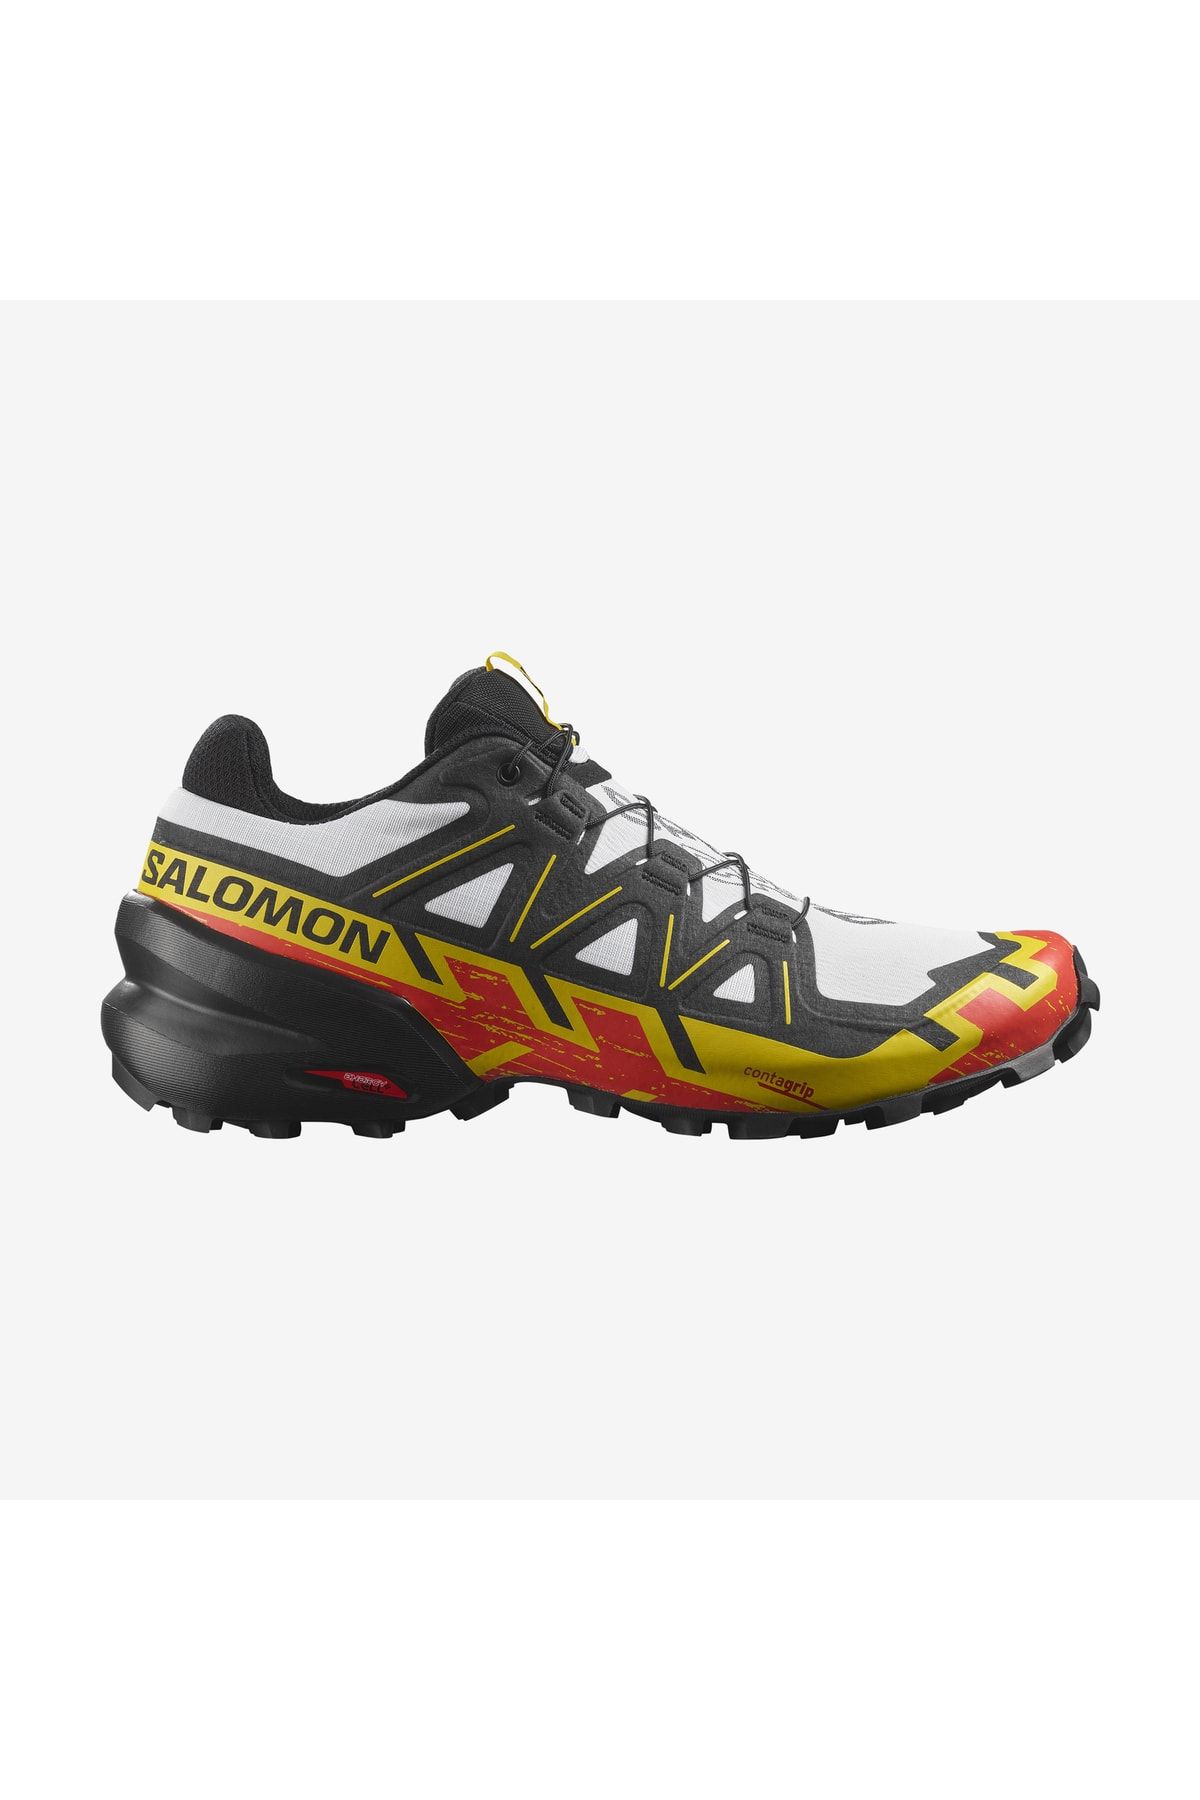 Salomon Speedcross 6 Erkek Siyah-beyaz Koşu & Antrenman Ayakkabı L41737800